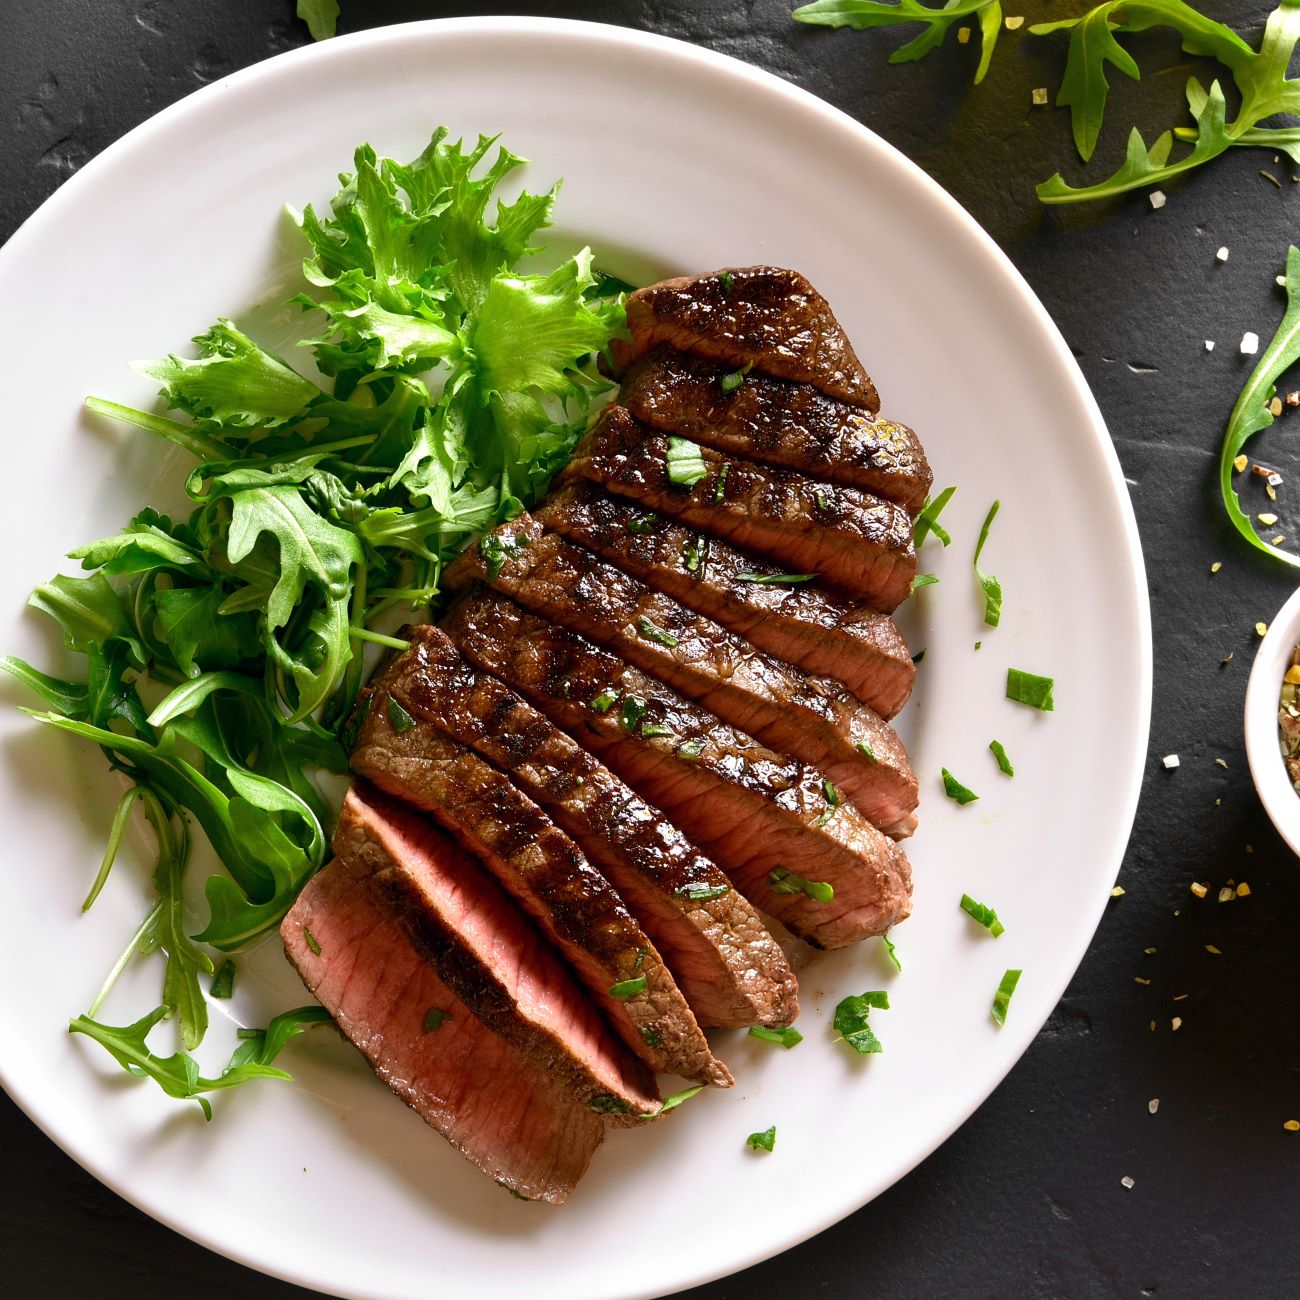 A fenti képen egy forrólevegős fritőzből származó steak látható salátával.